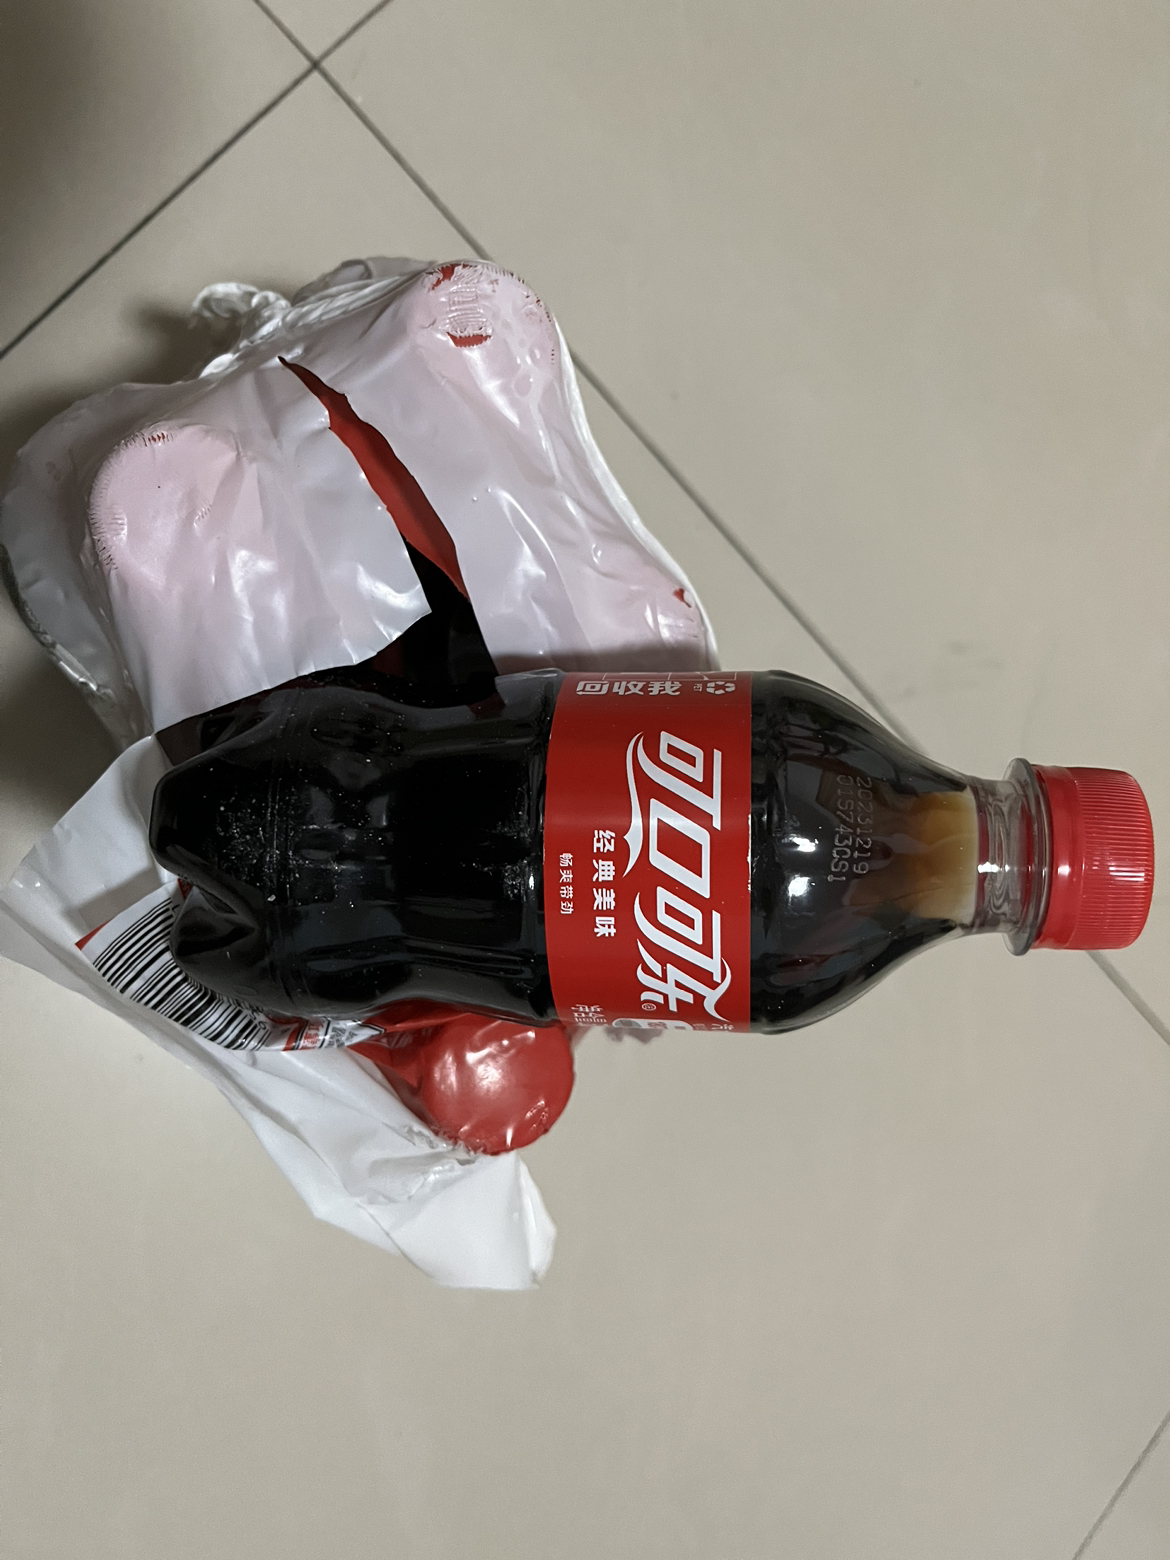 可口可乐碳酸饮料经典口味可乐气泡小瓶装汽水300ml*6瓶苏宁宜品推荐晒单图